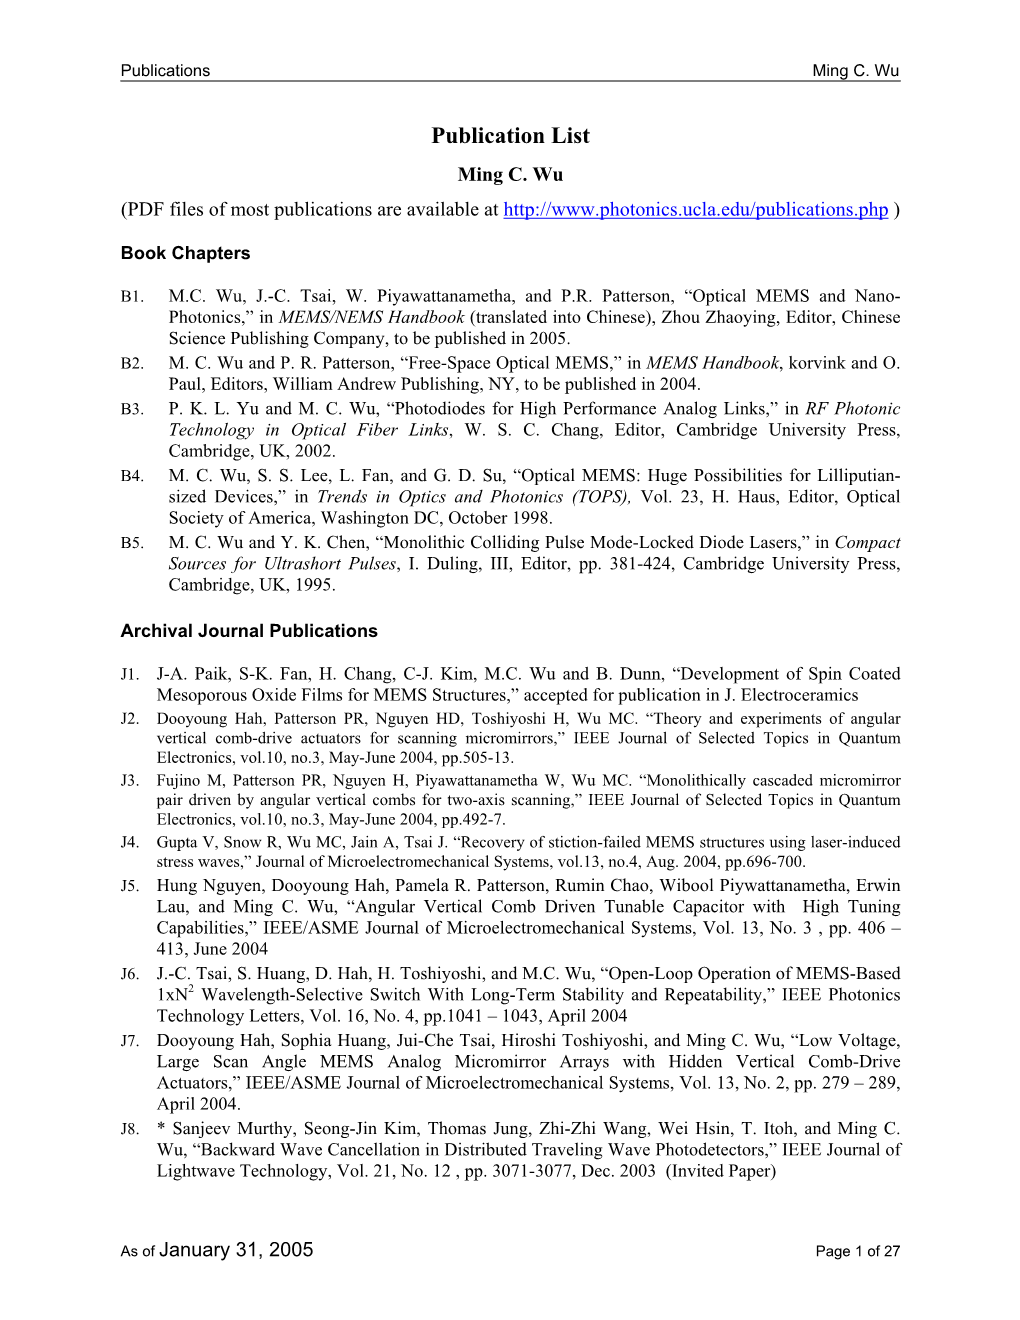 Publication List Ming C